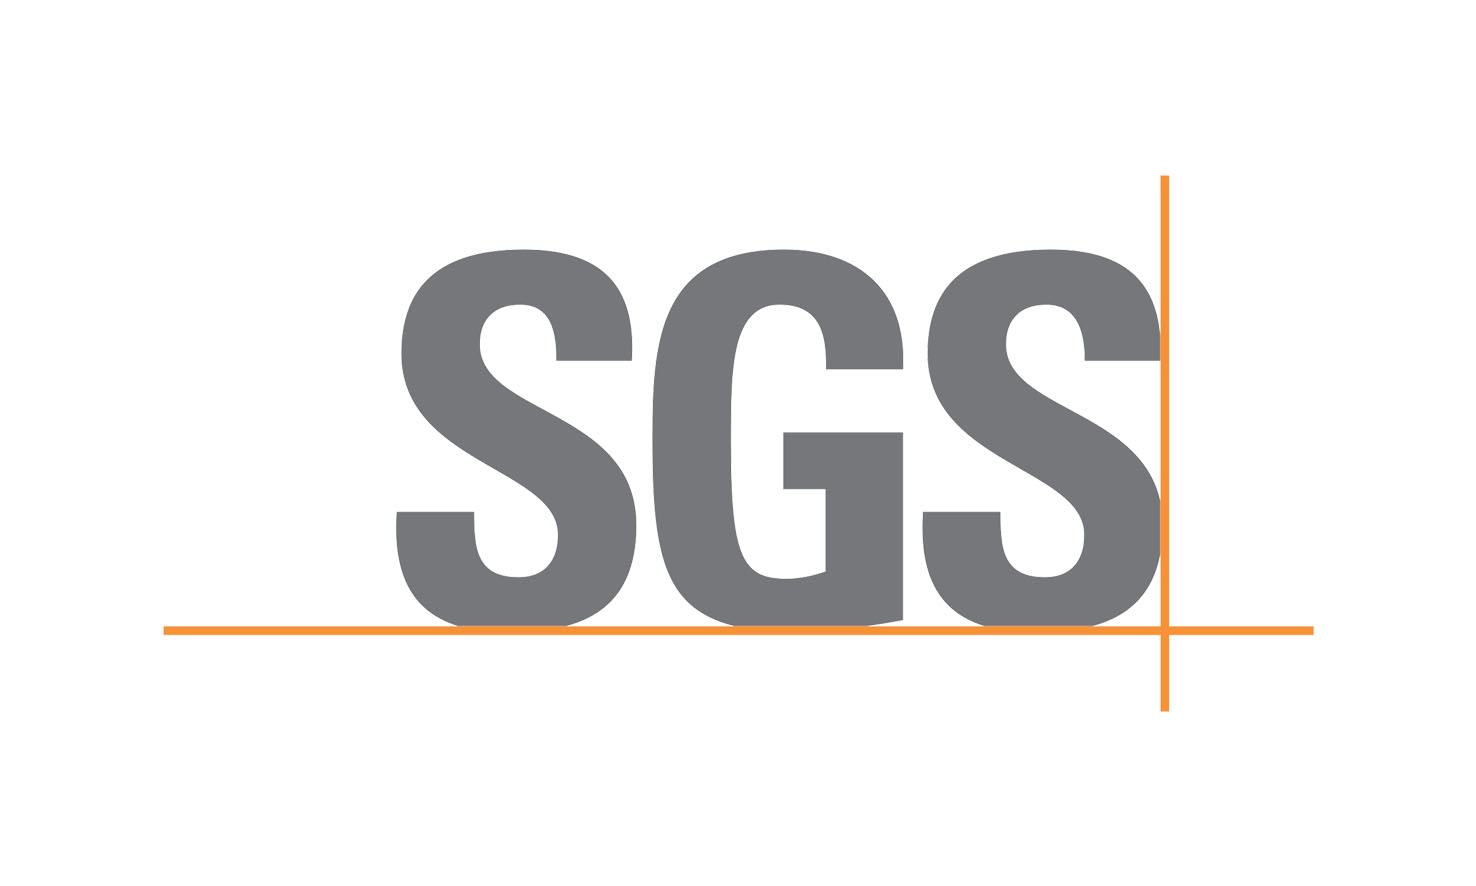 SGS Société Générale de Surveillance SA